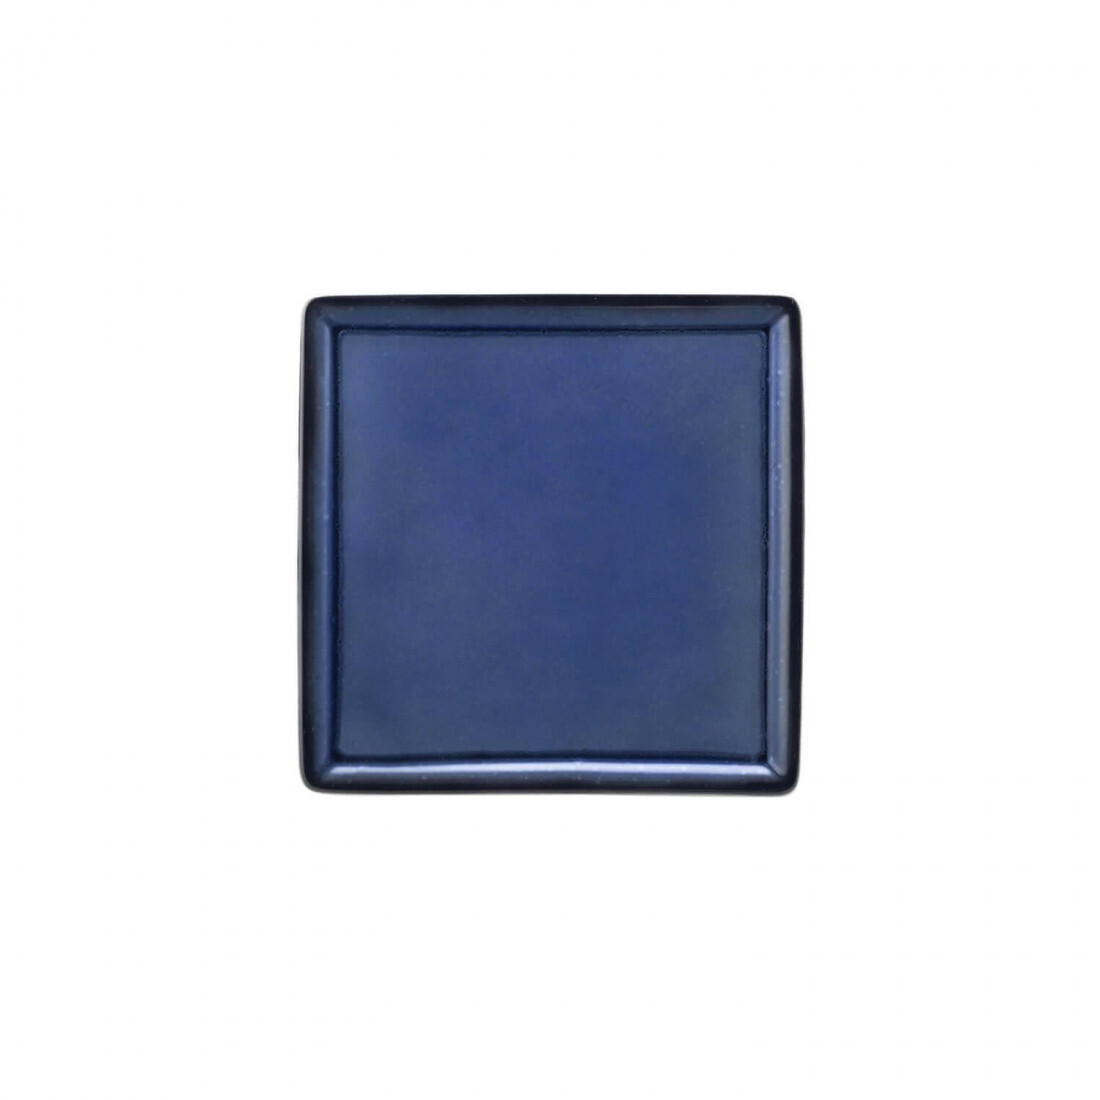 Seltmann - Buffet Gourmet -Platte 5170 23x23 cm Royal Blau